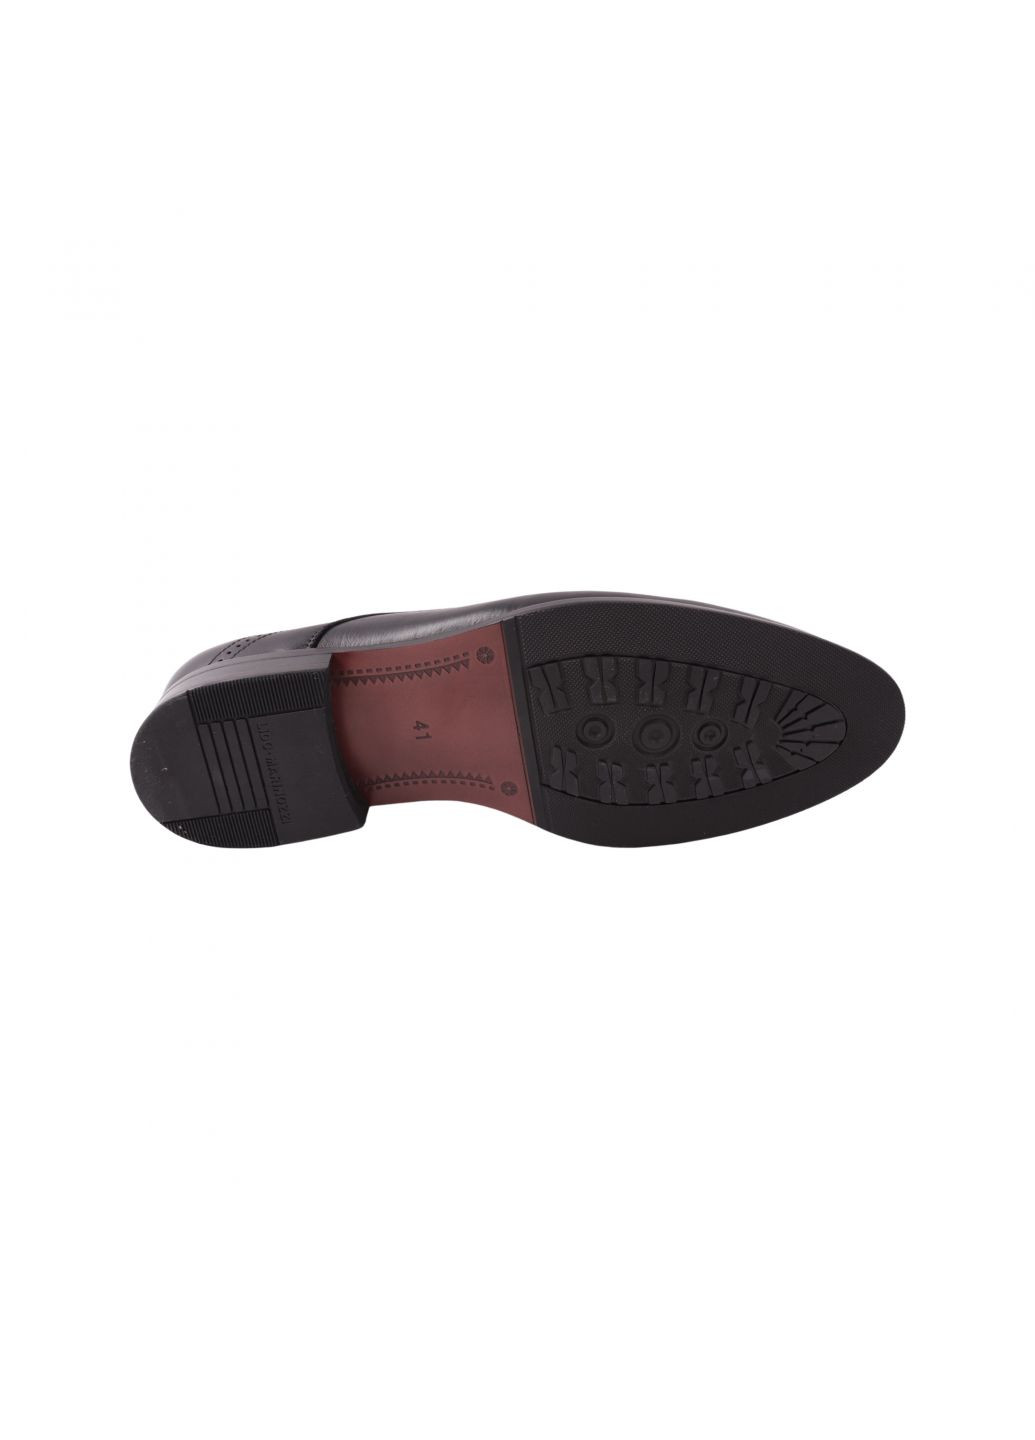 Туфлі чоловічі Lido Marinozi чорні натуральна шкіра Lido Marinozzi 306-23dt (261856598)